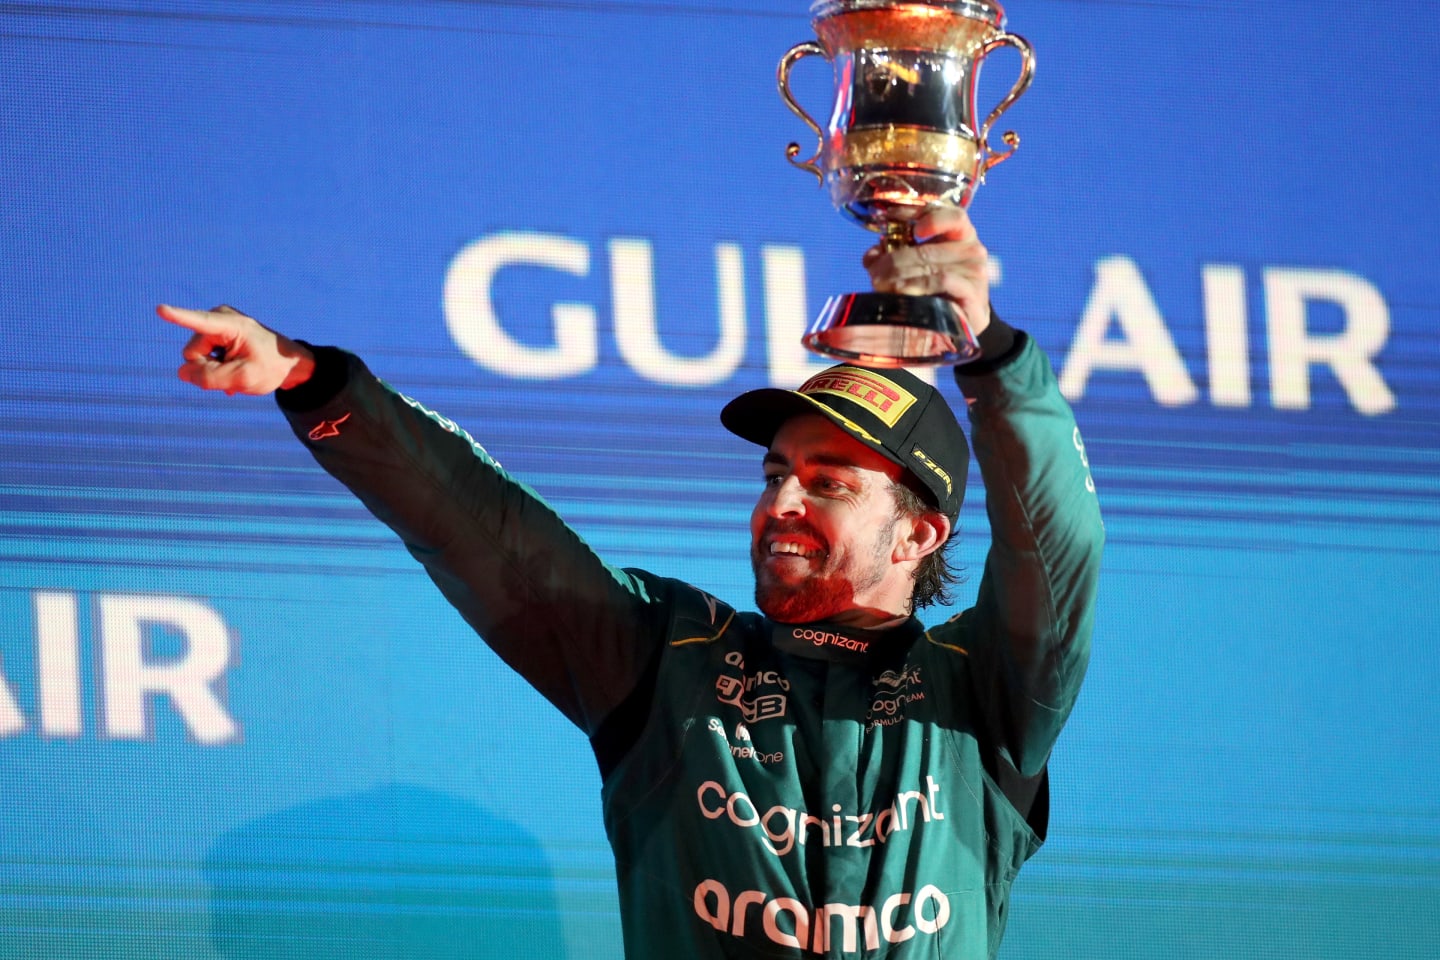 BAHRAIN, BAHRAIN - MARCH 05: Third placed Fernando Alonso of Spain and Aston Martin F1 Team